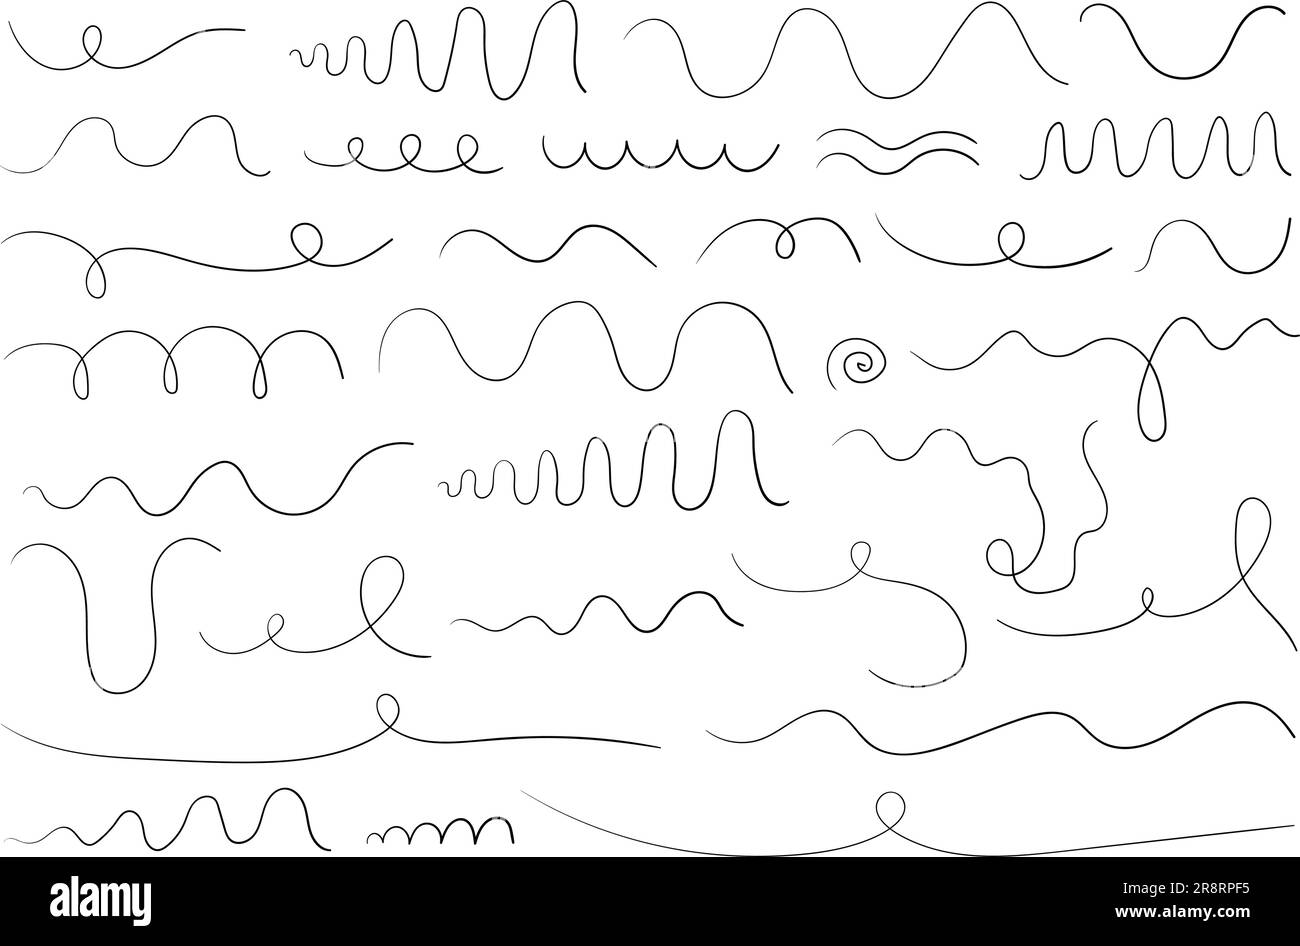 Handgezeichnete Kritzelspuren. Vektorsatz aus wellenförmigen verdrehten Kritzelelementen für Grafikdesign Stock Vektor